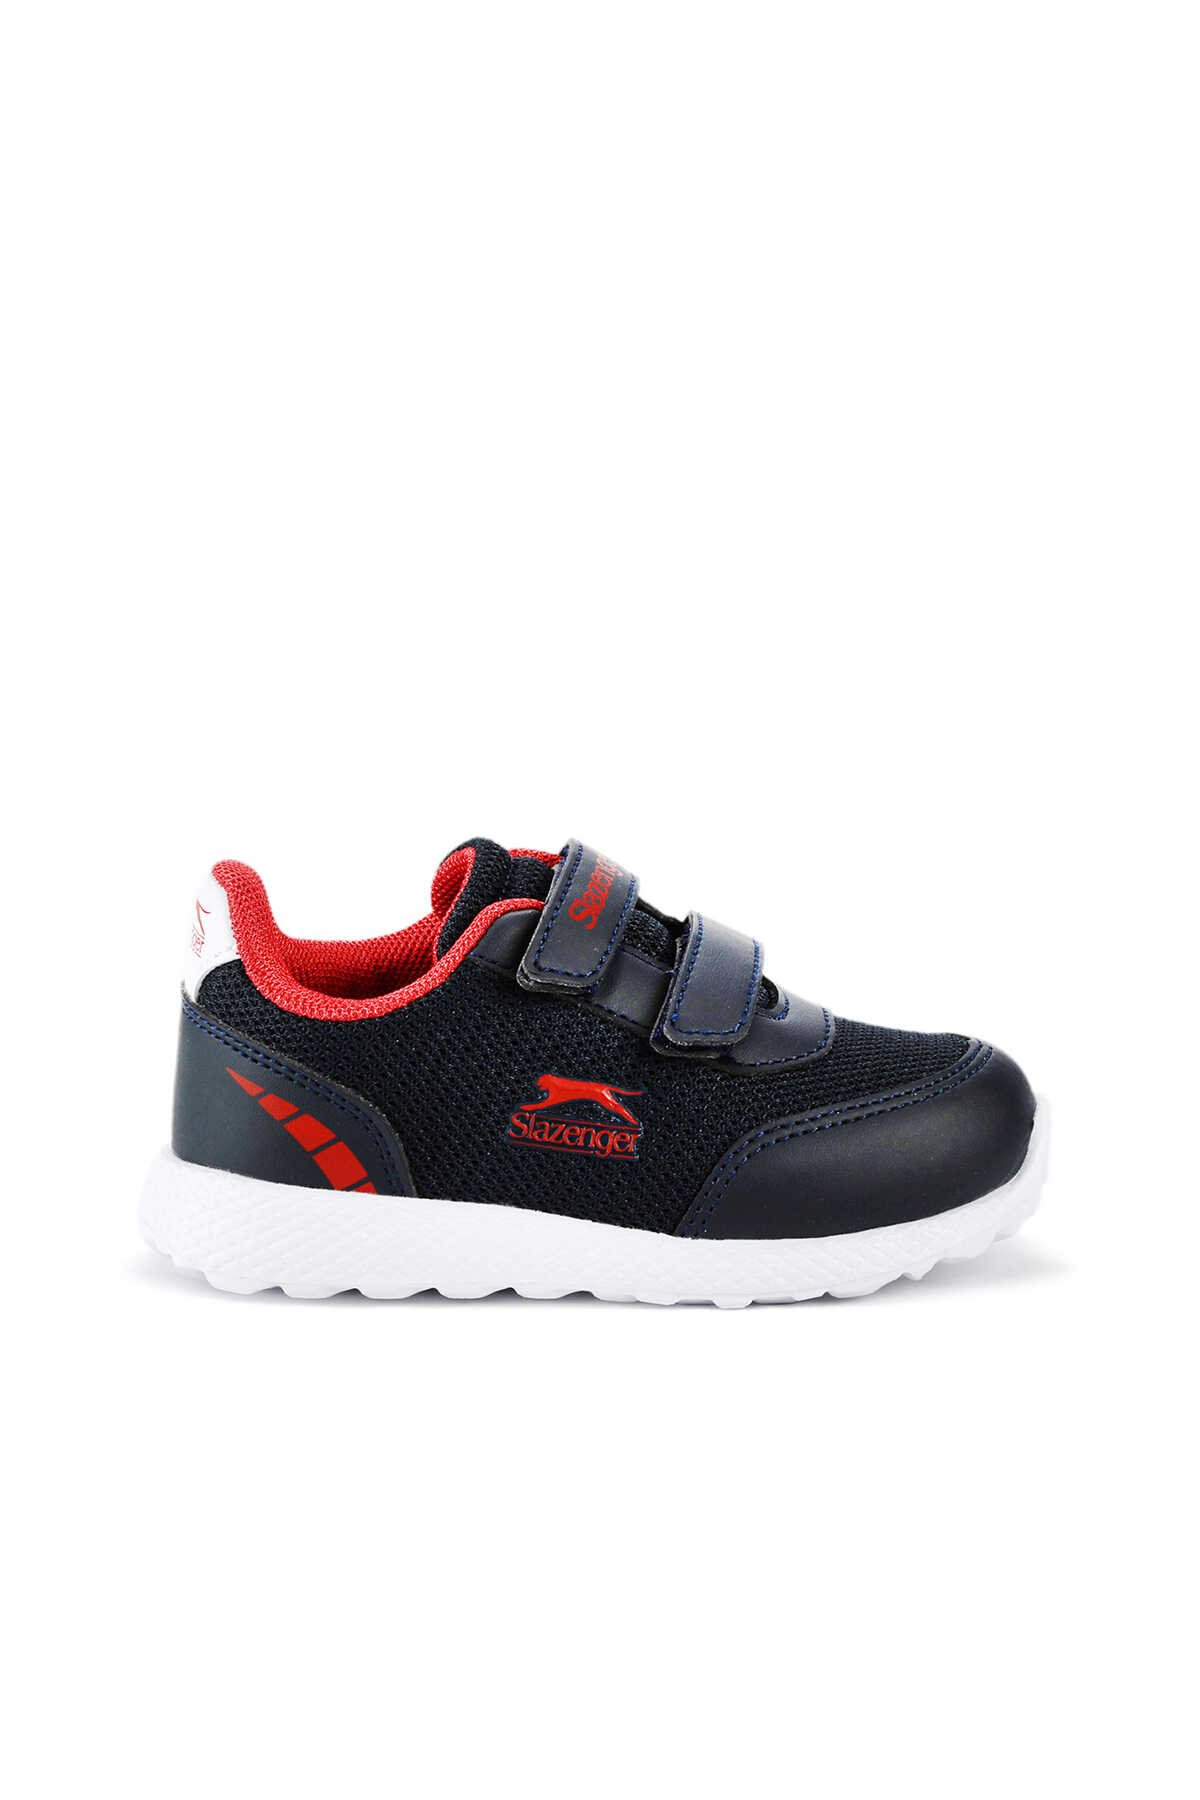 Slazenger - FAINA Sneaker Erkek Çocuk Ayakkabı Lacivert / Kırmızı